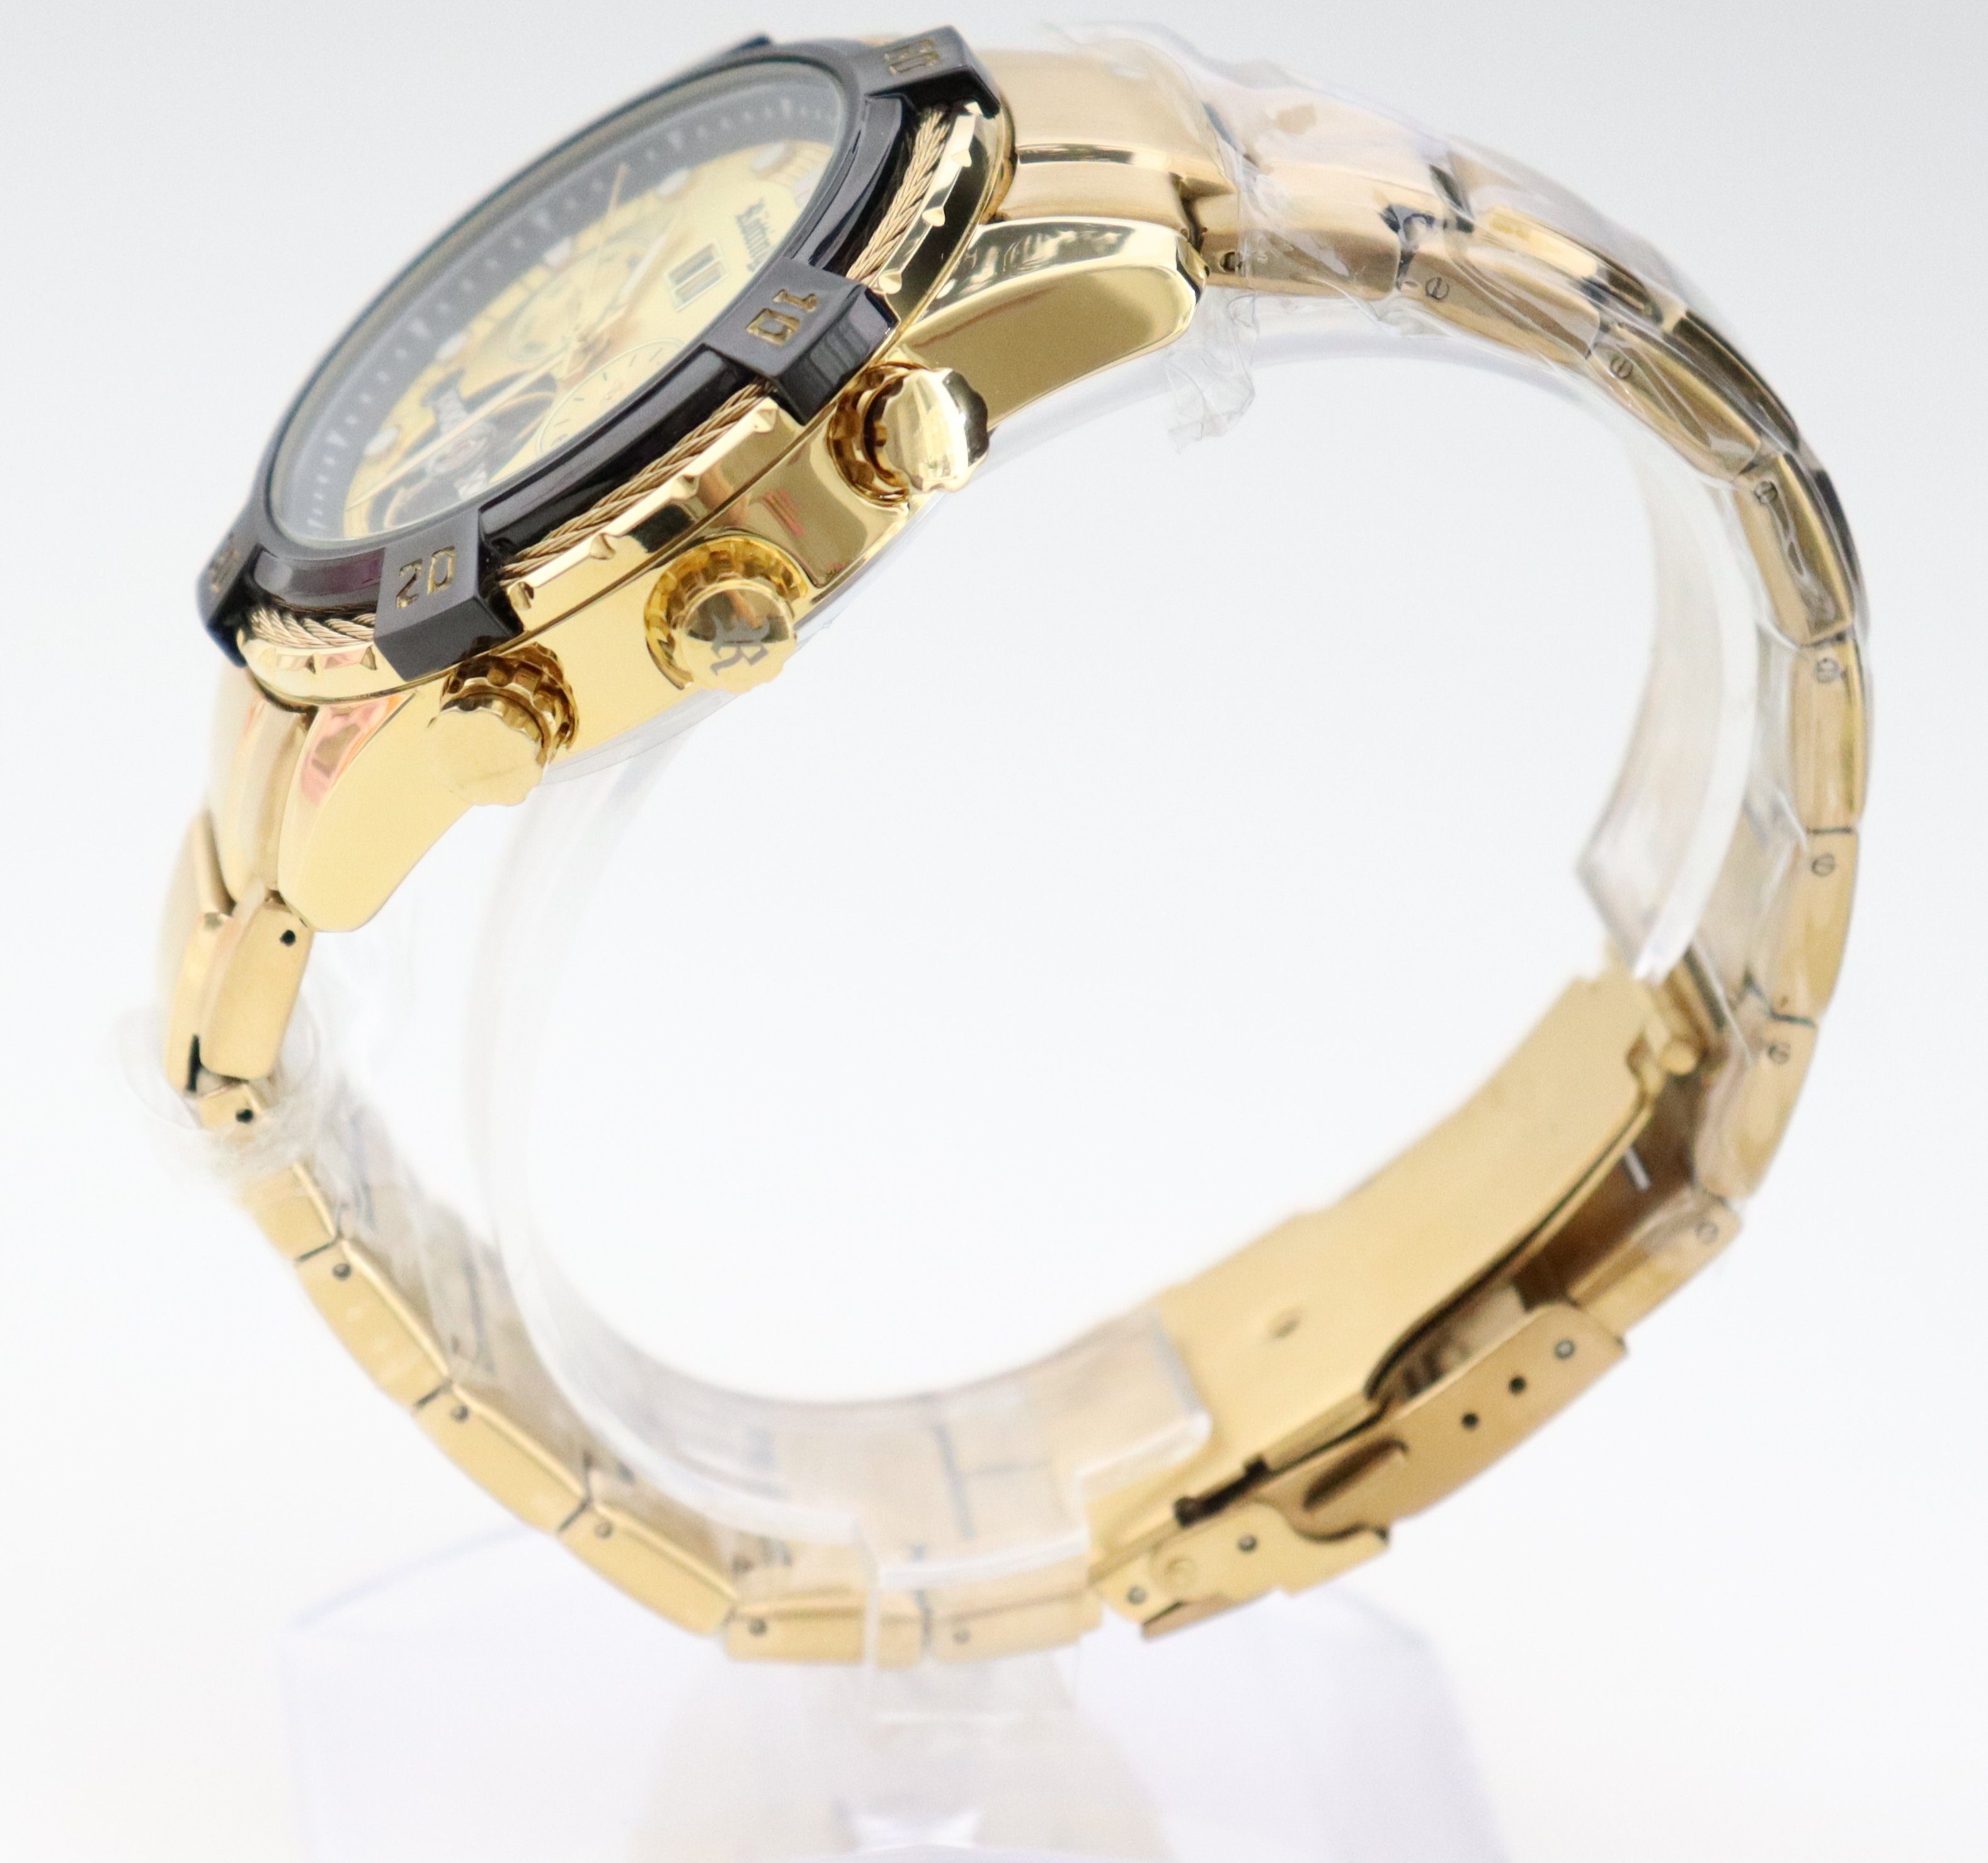 Rötting Ziffernblatt cm Herrenuhr hochwertige Automatikuhr Armbandumfang Design 18 bis 24 Automatikuhr Uhrenholzbox goldfarbenes wählbar Datumsanzeige